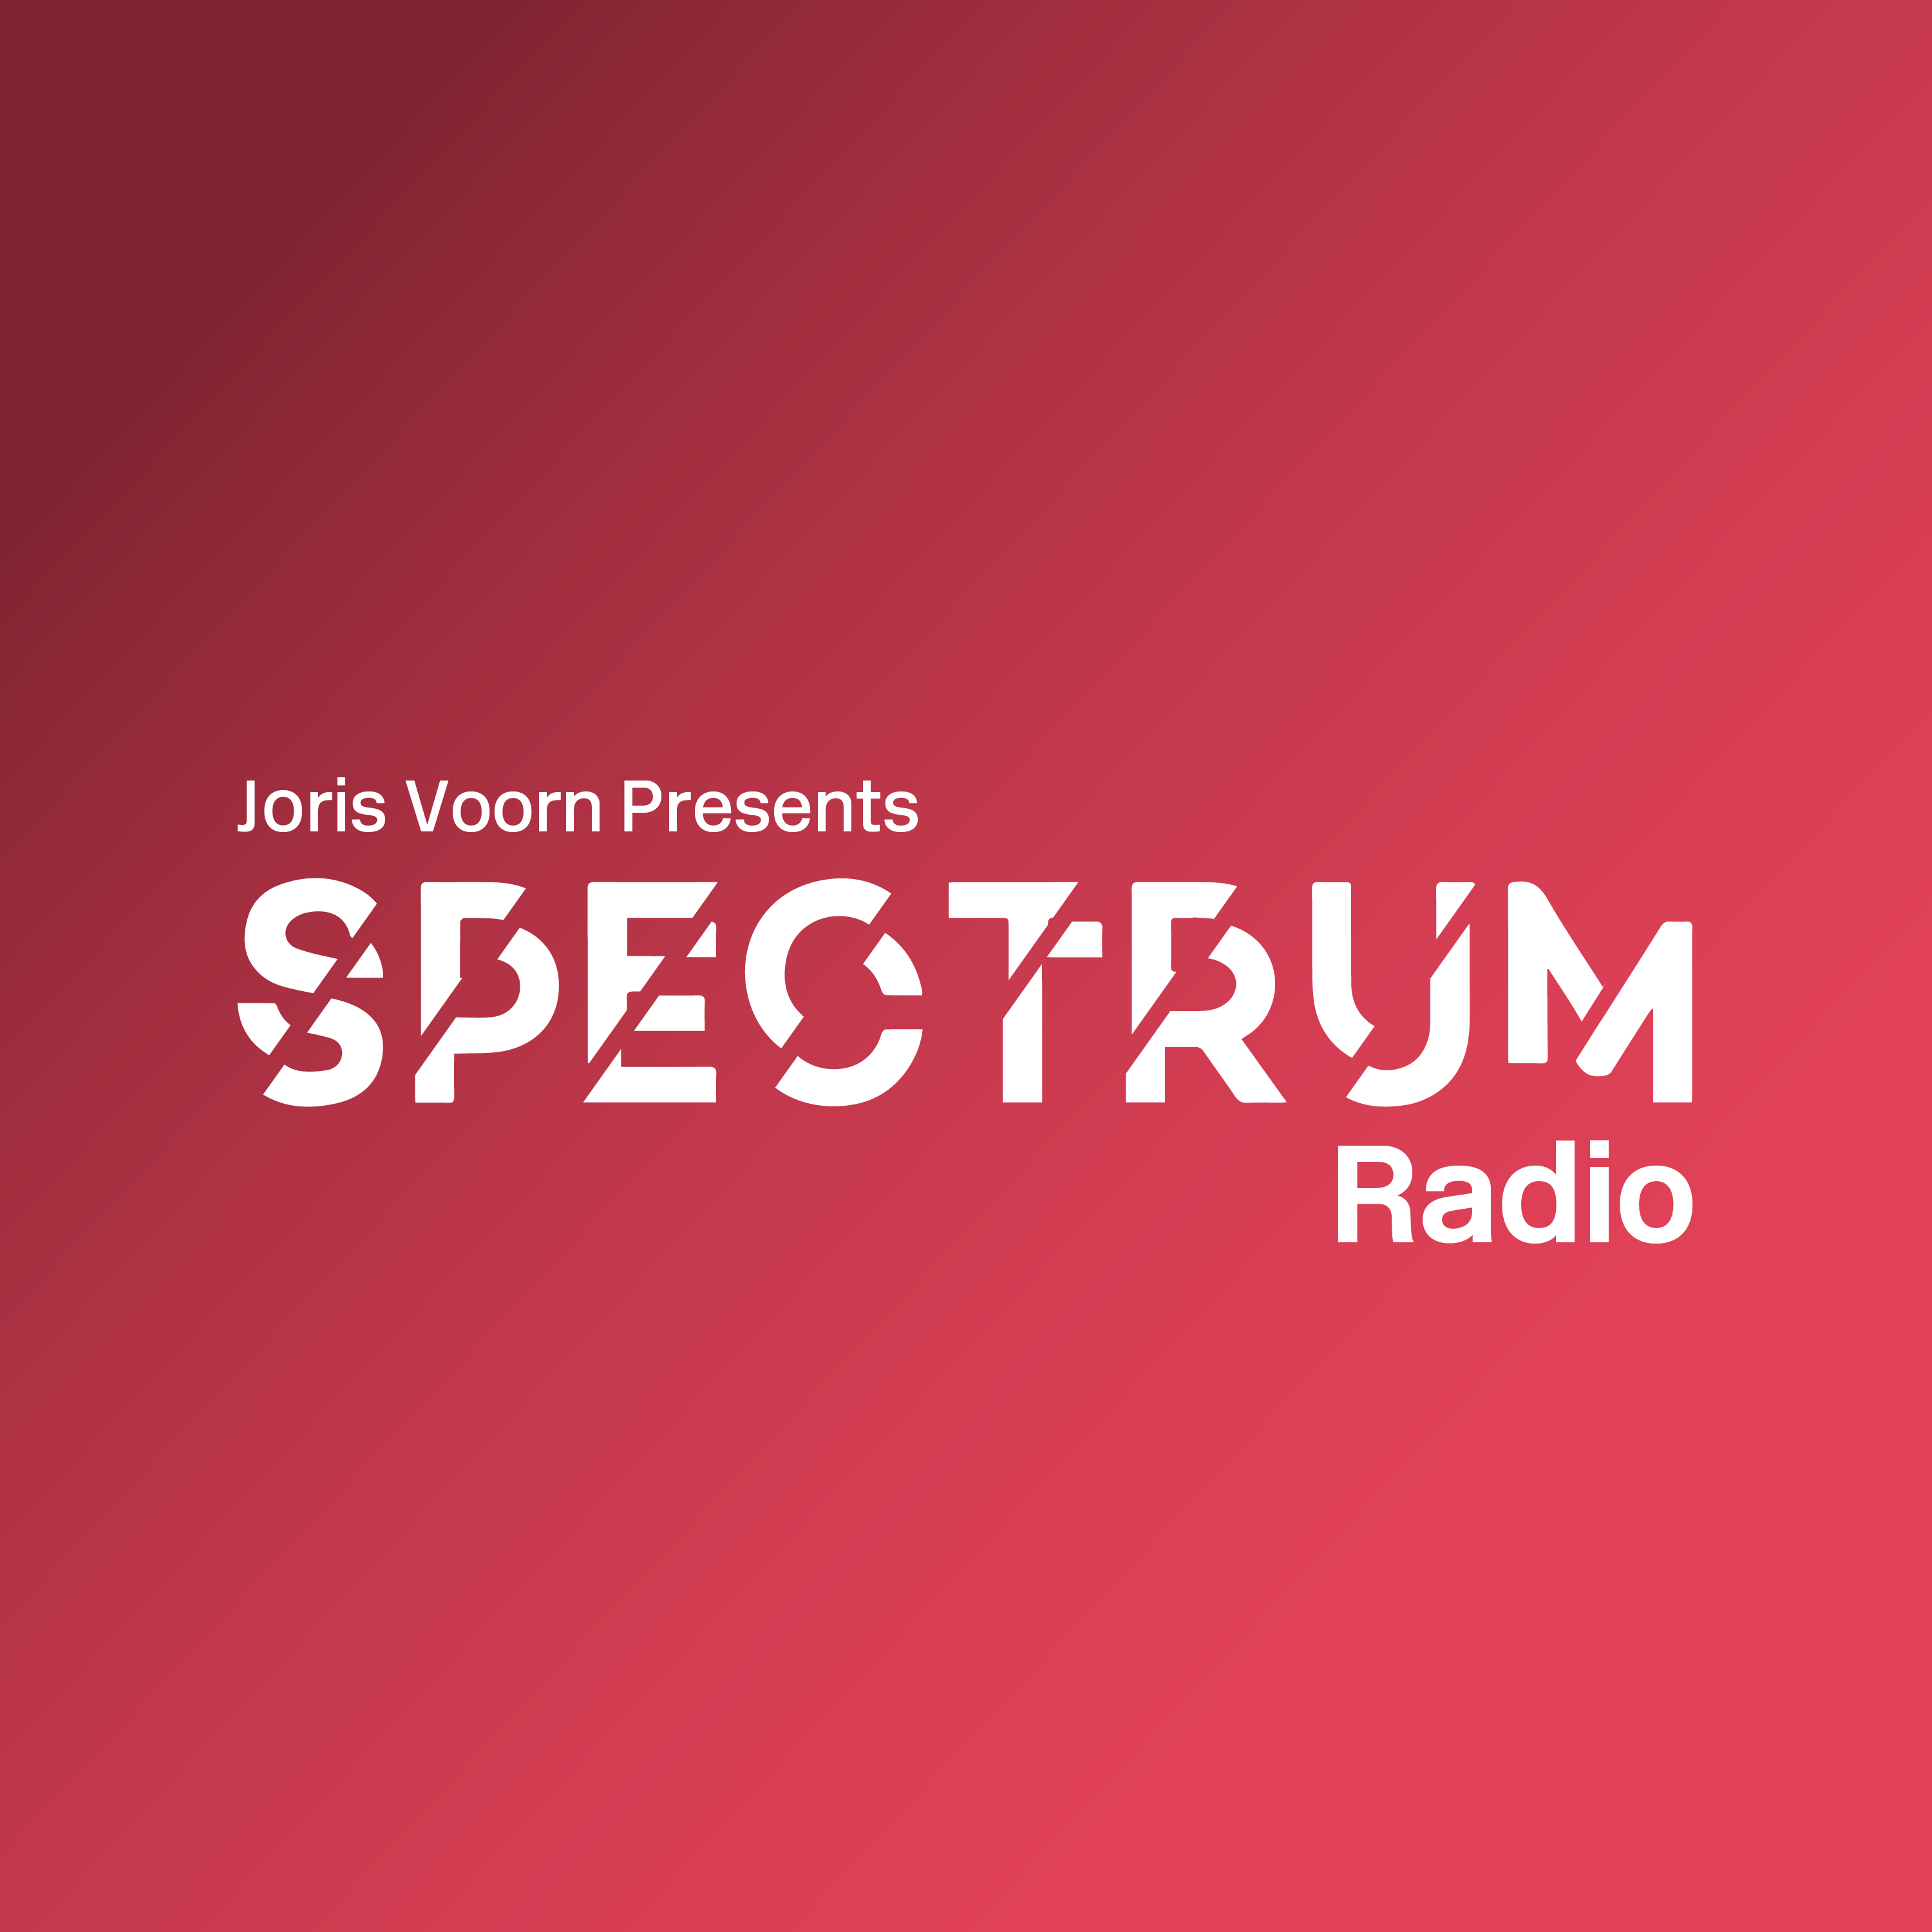 Delta Podcasts - Spectrum Radio by Joris Voorn (01.07.2018)